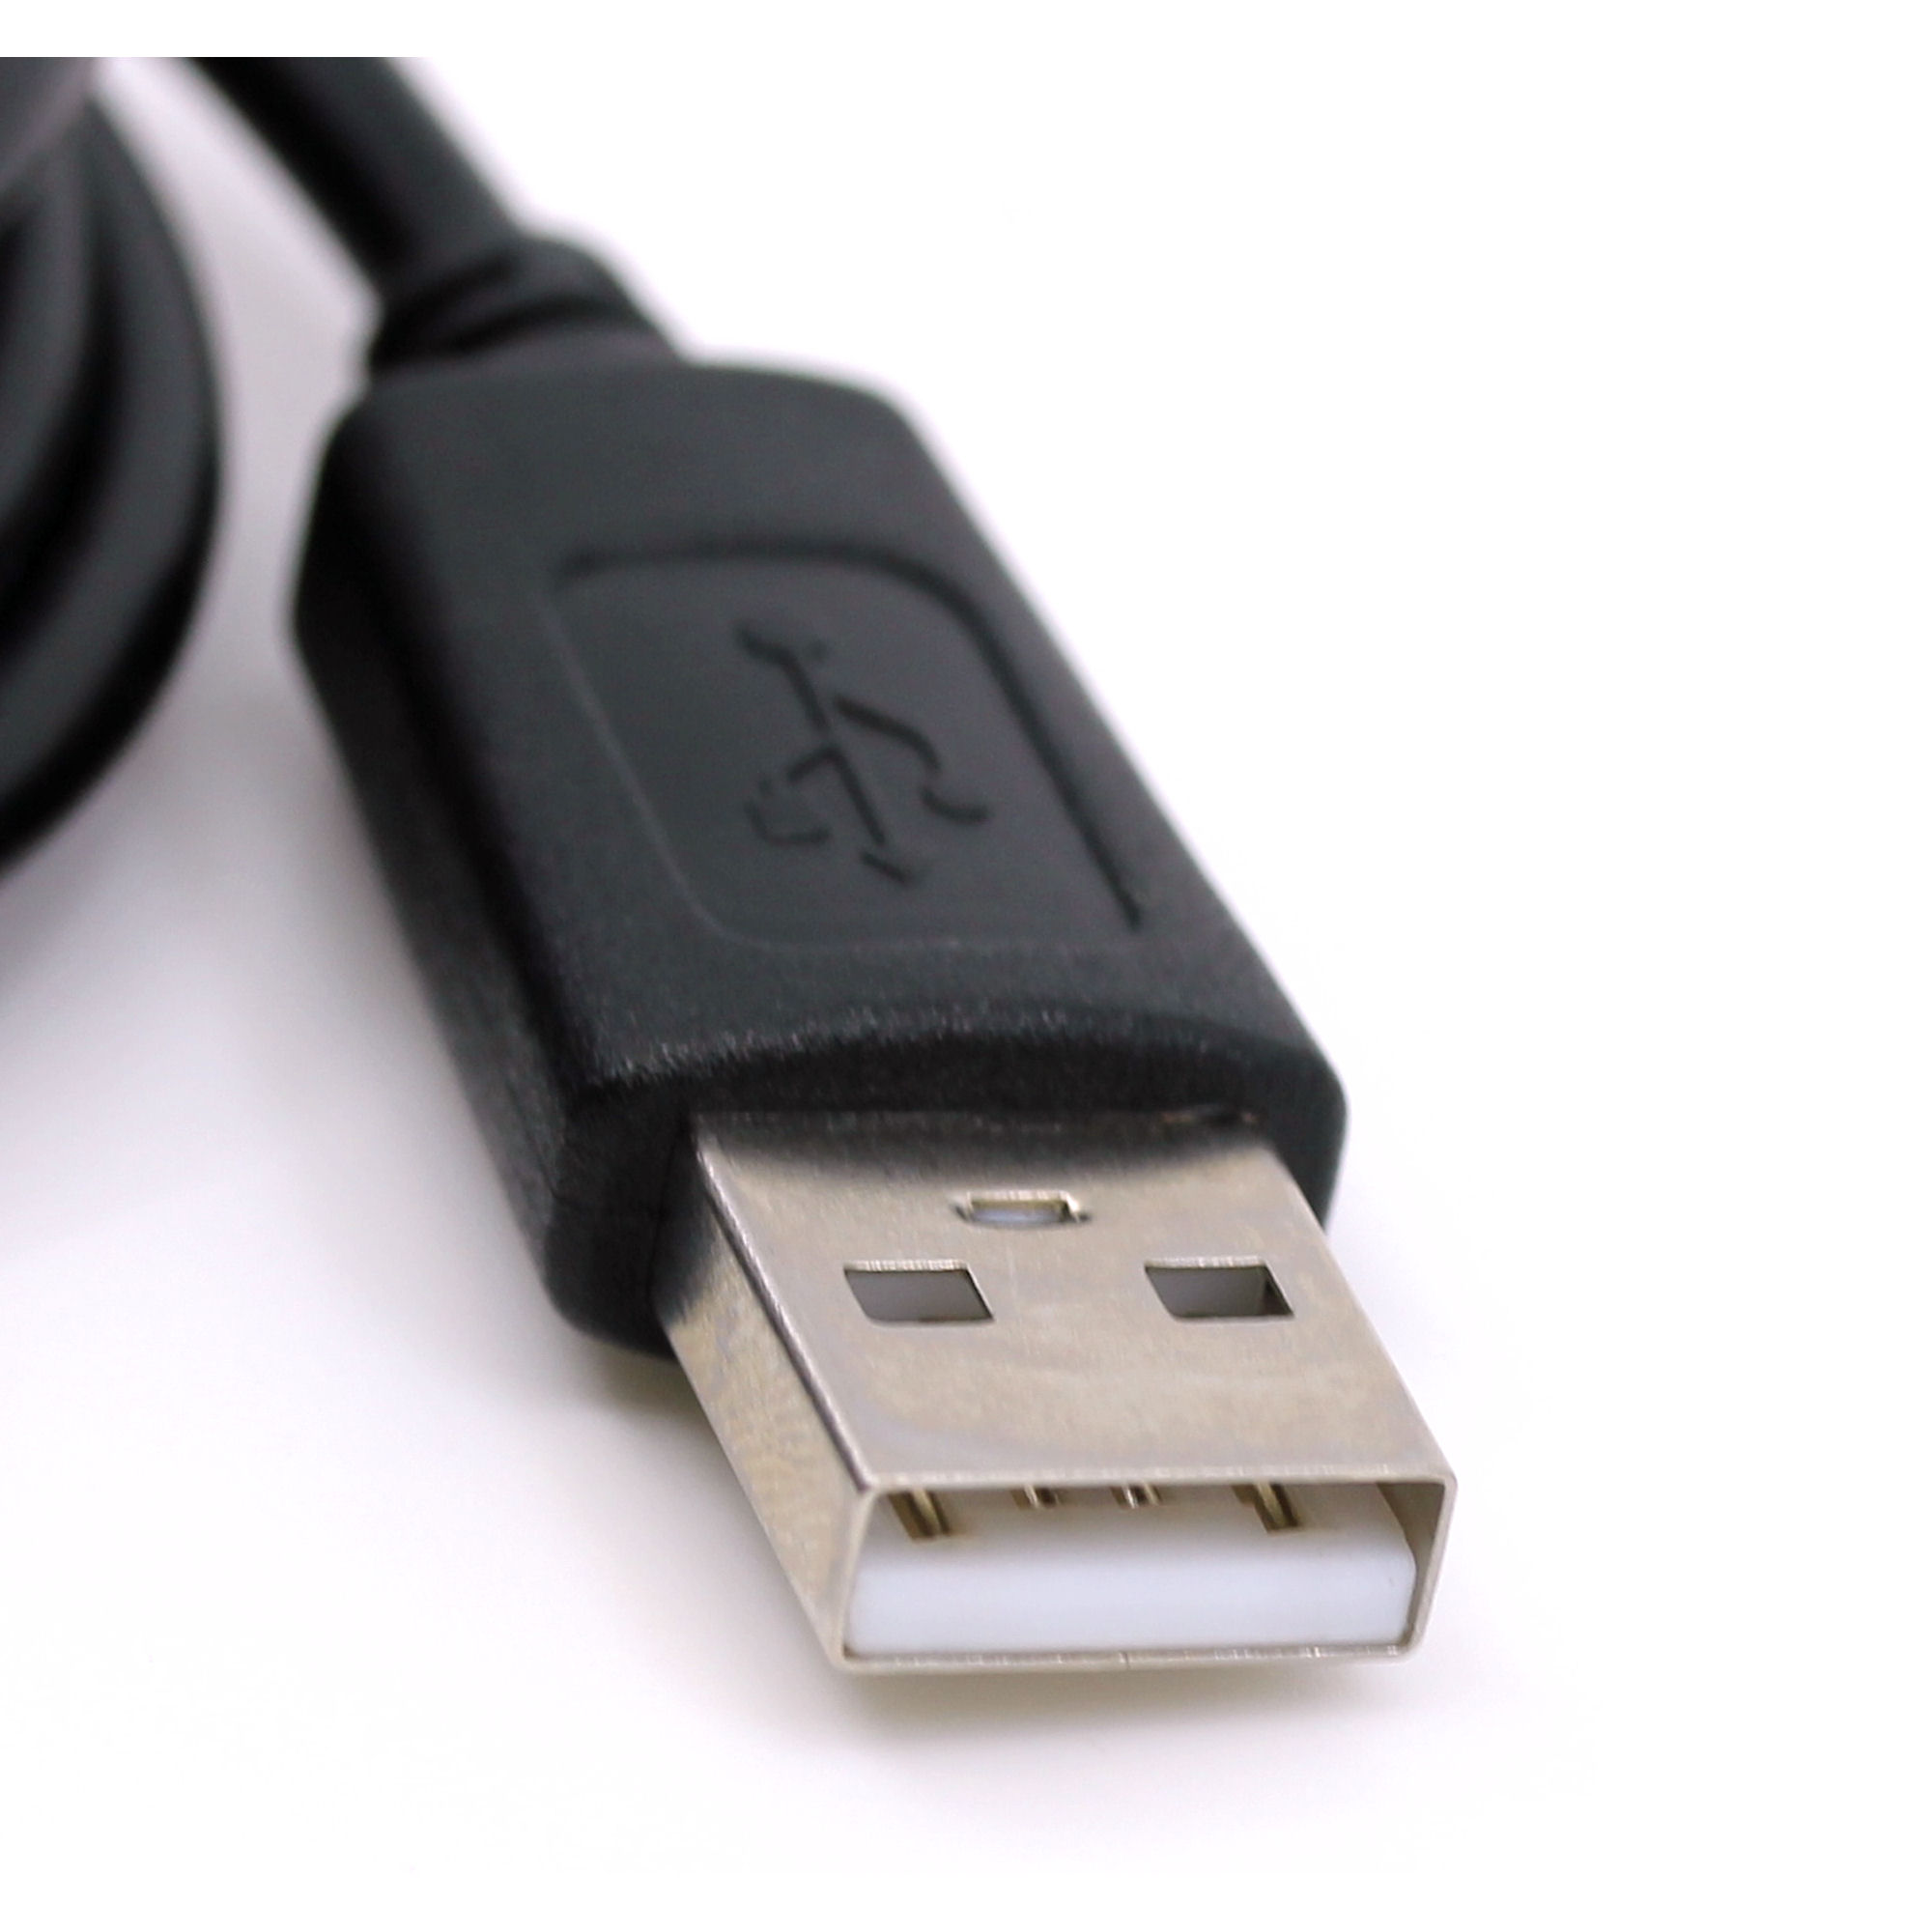 USB Datenkabel für Canon Digital IXUS 960 is, 970 is, 980 is, 990, 990 is, IXUS I Zoom, IXUS I7